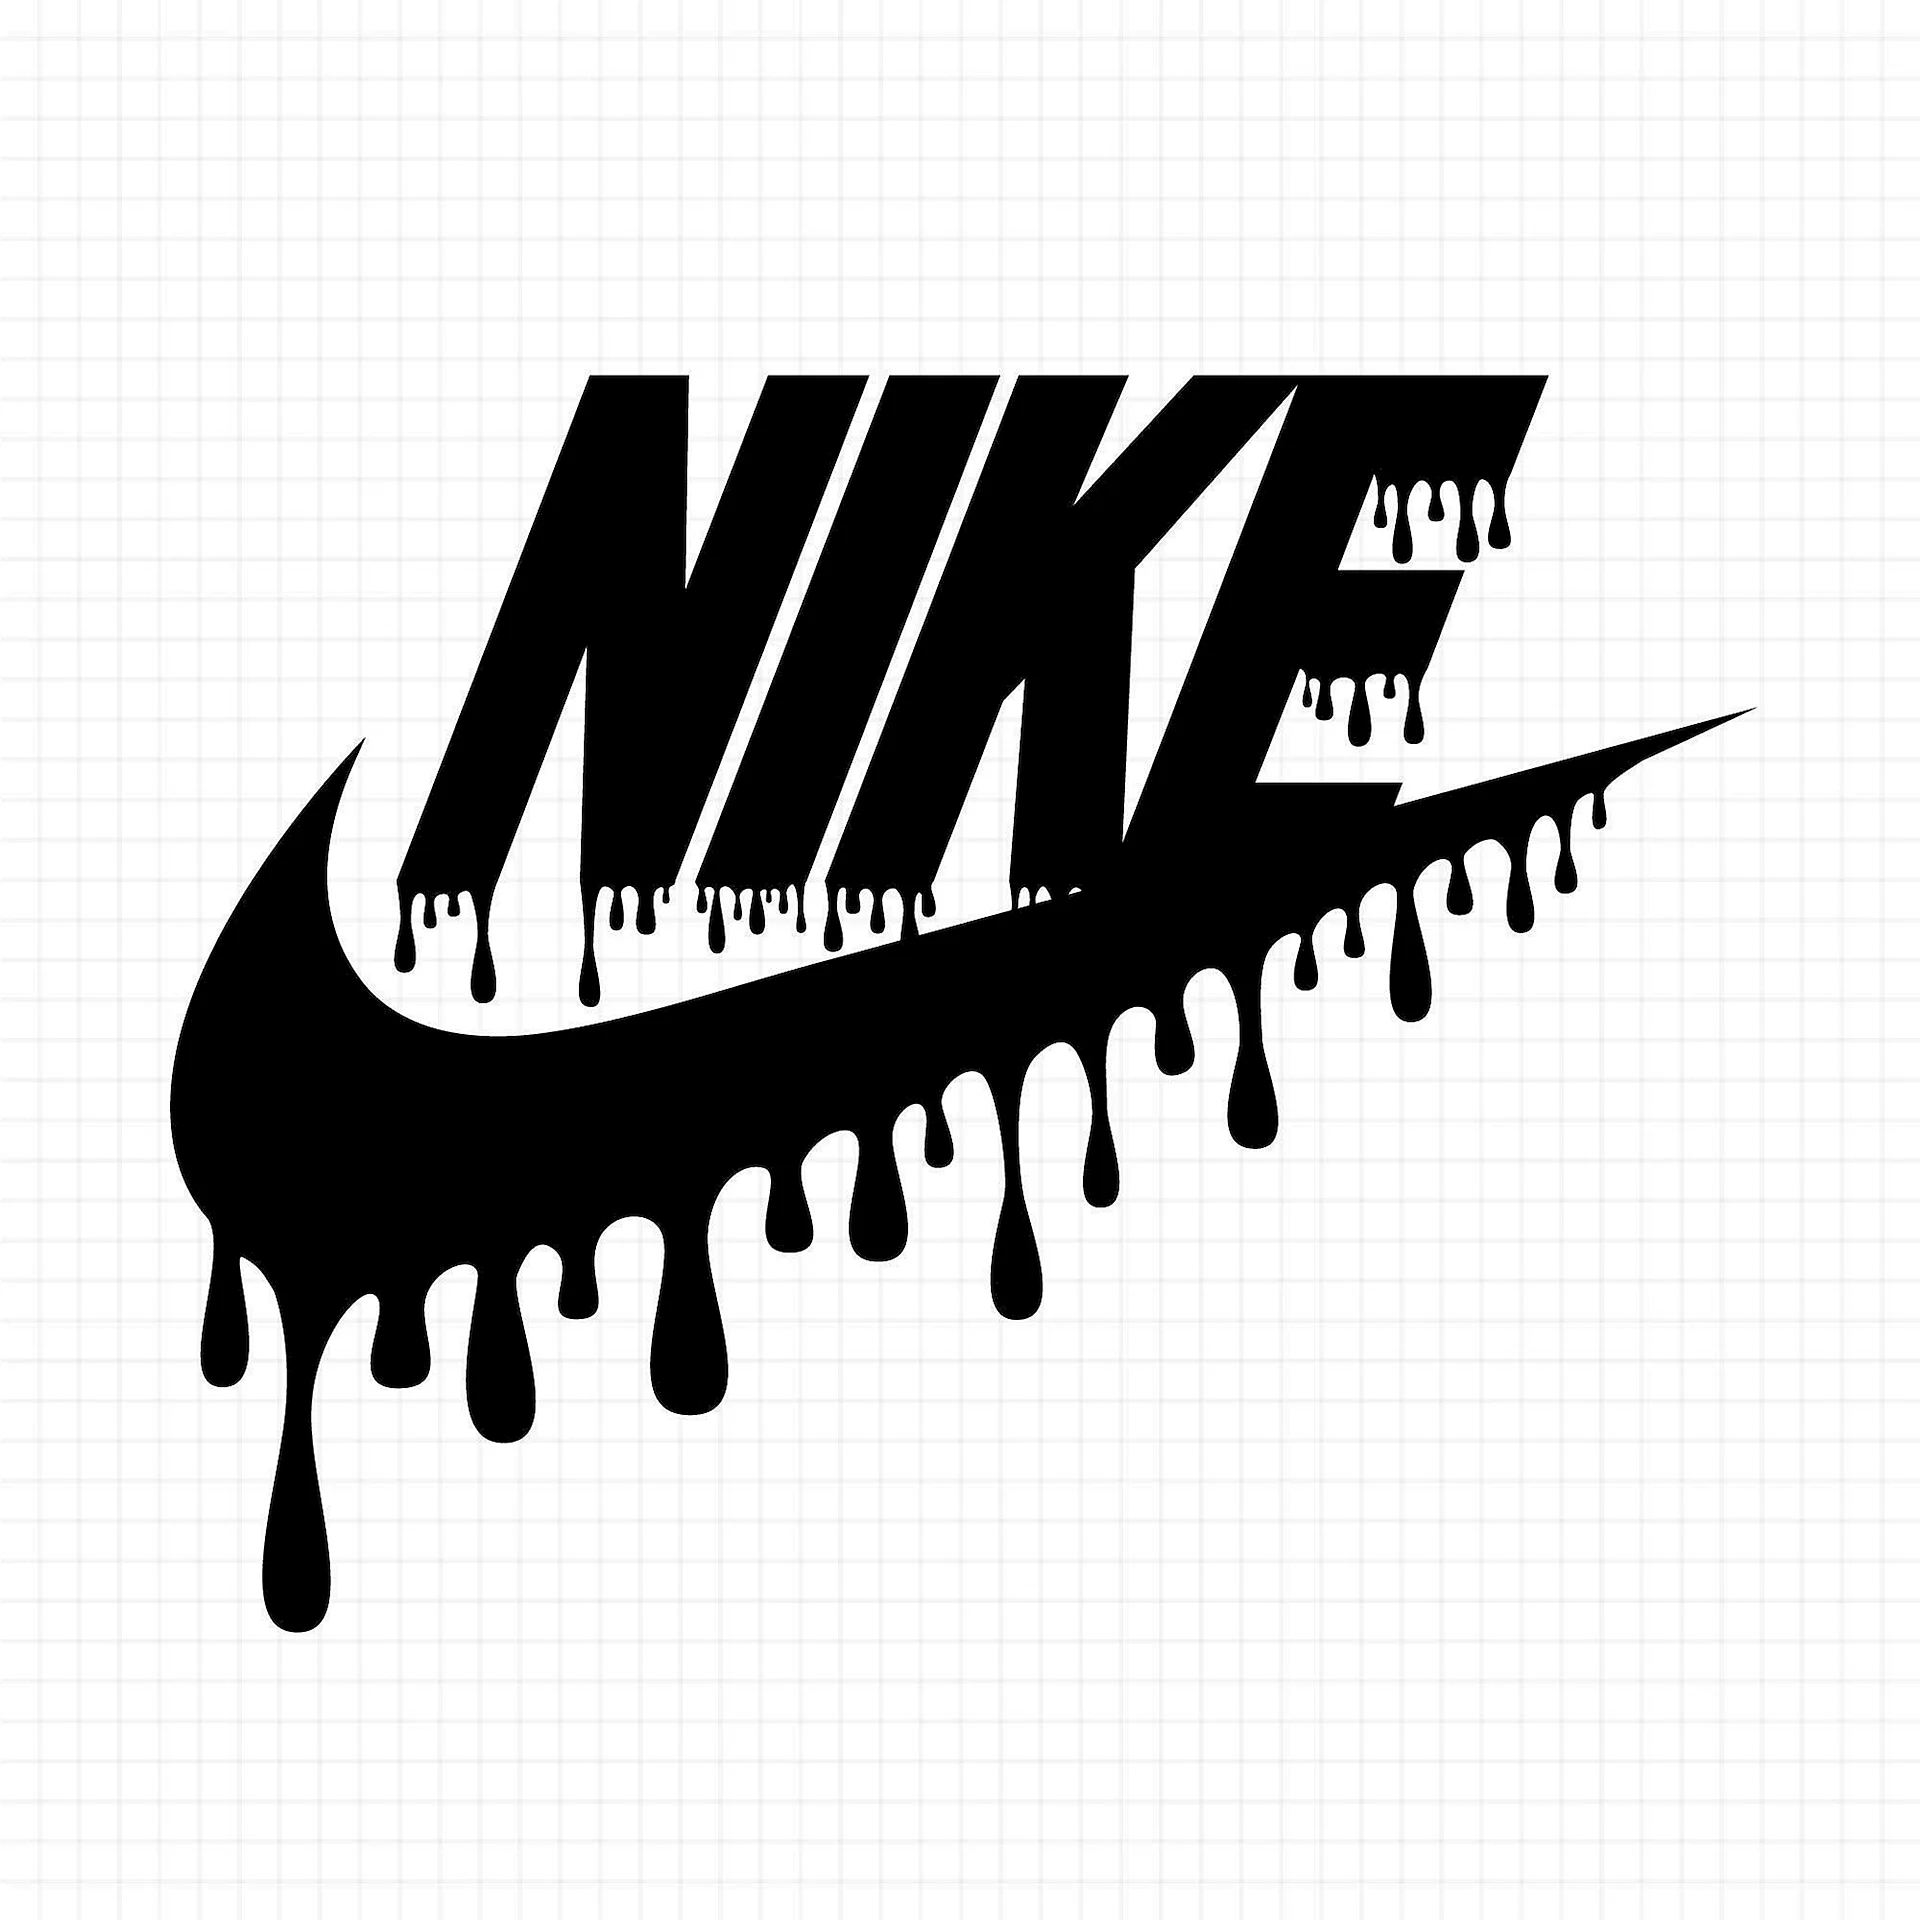 Logos Nike 2020 Wallpaper